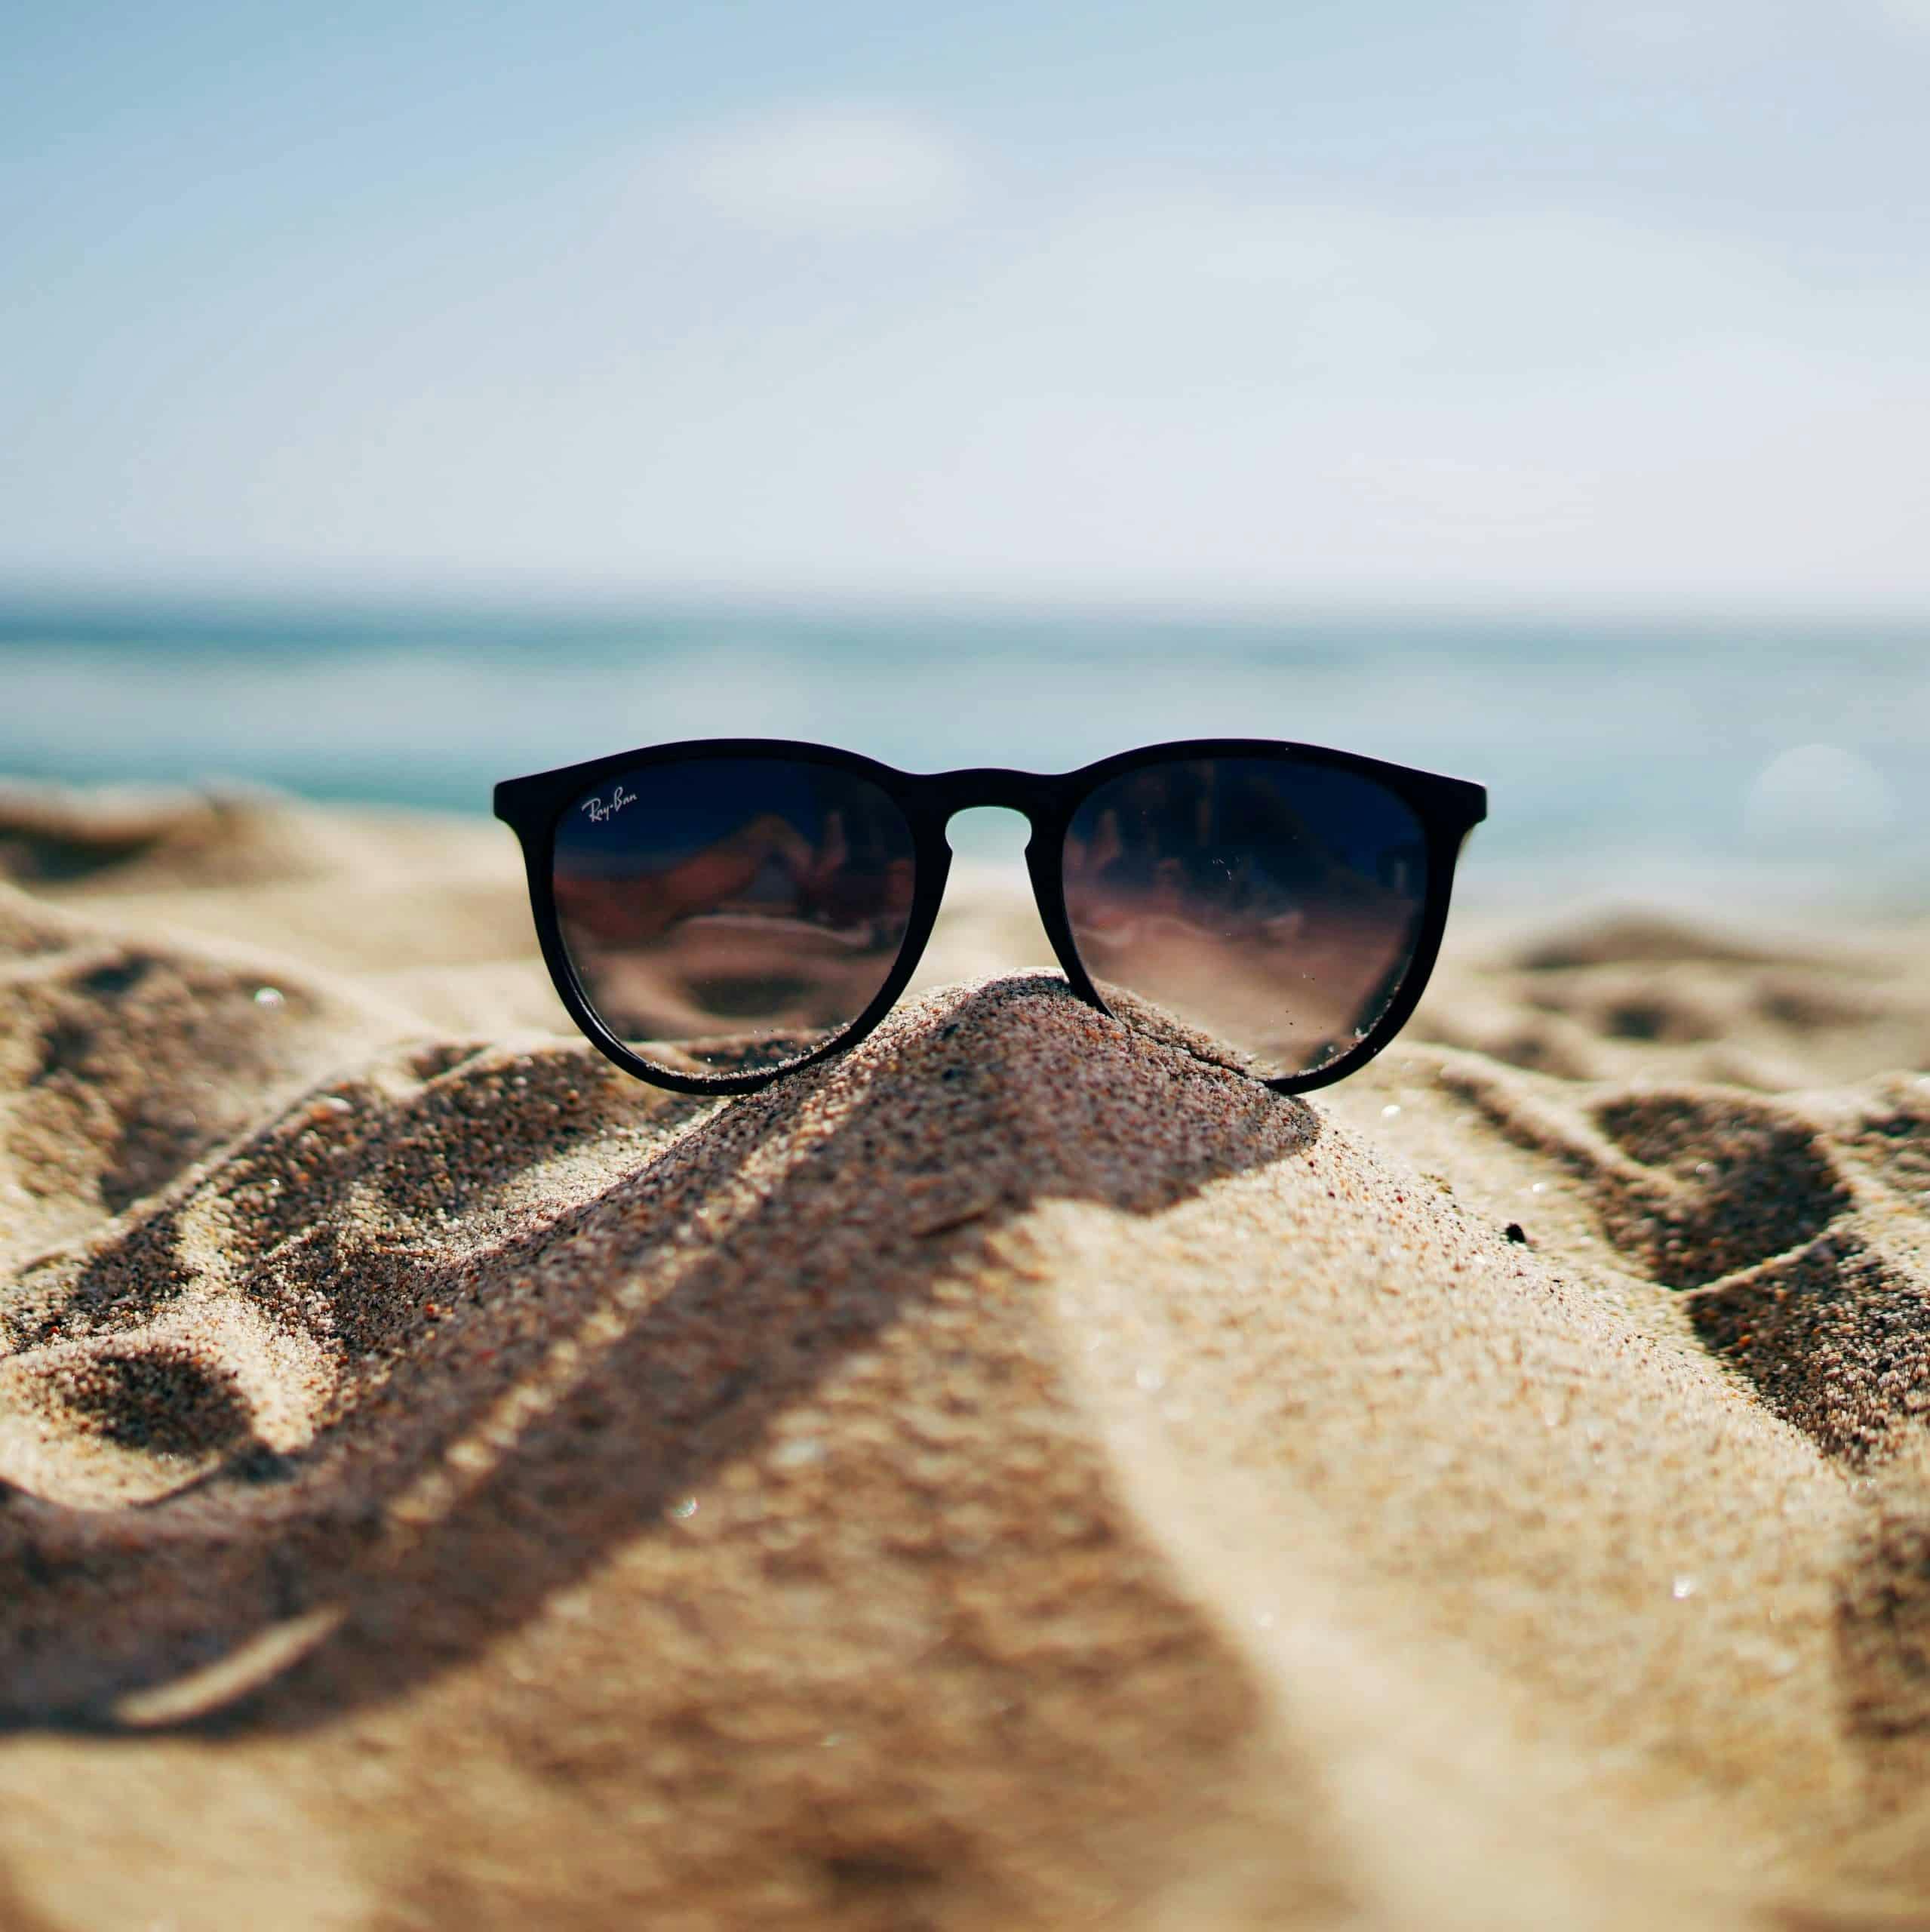 Sunglasses on the beach in Martinique